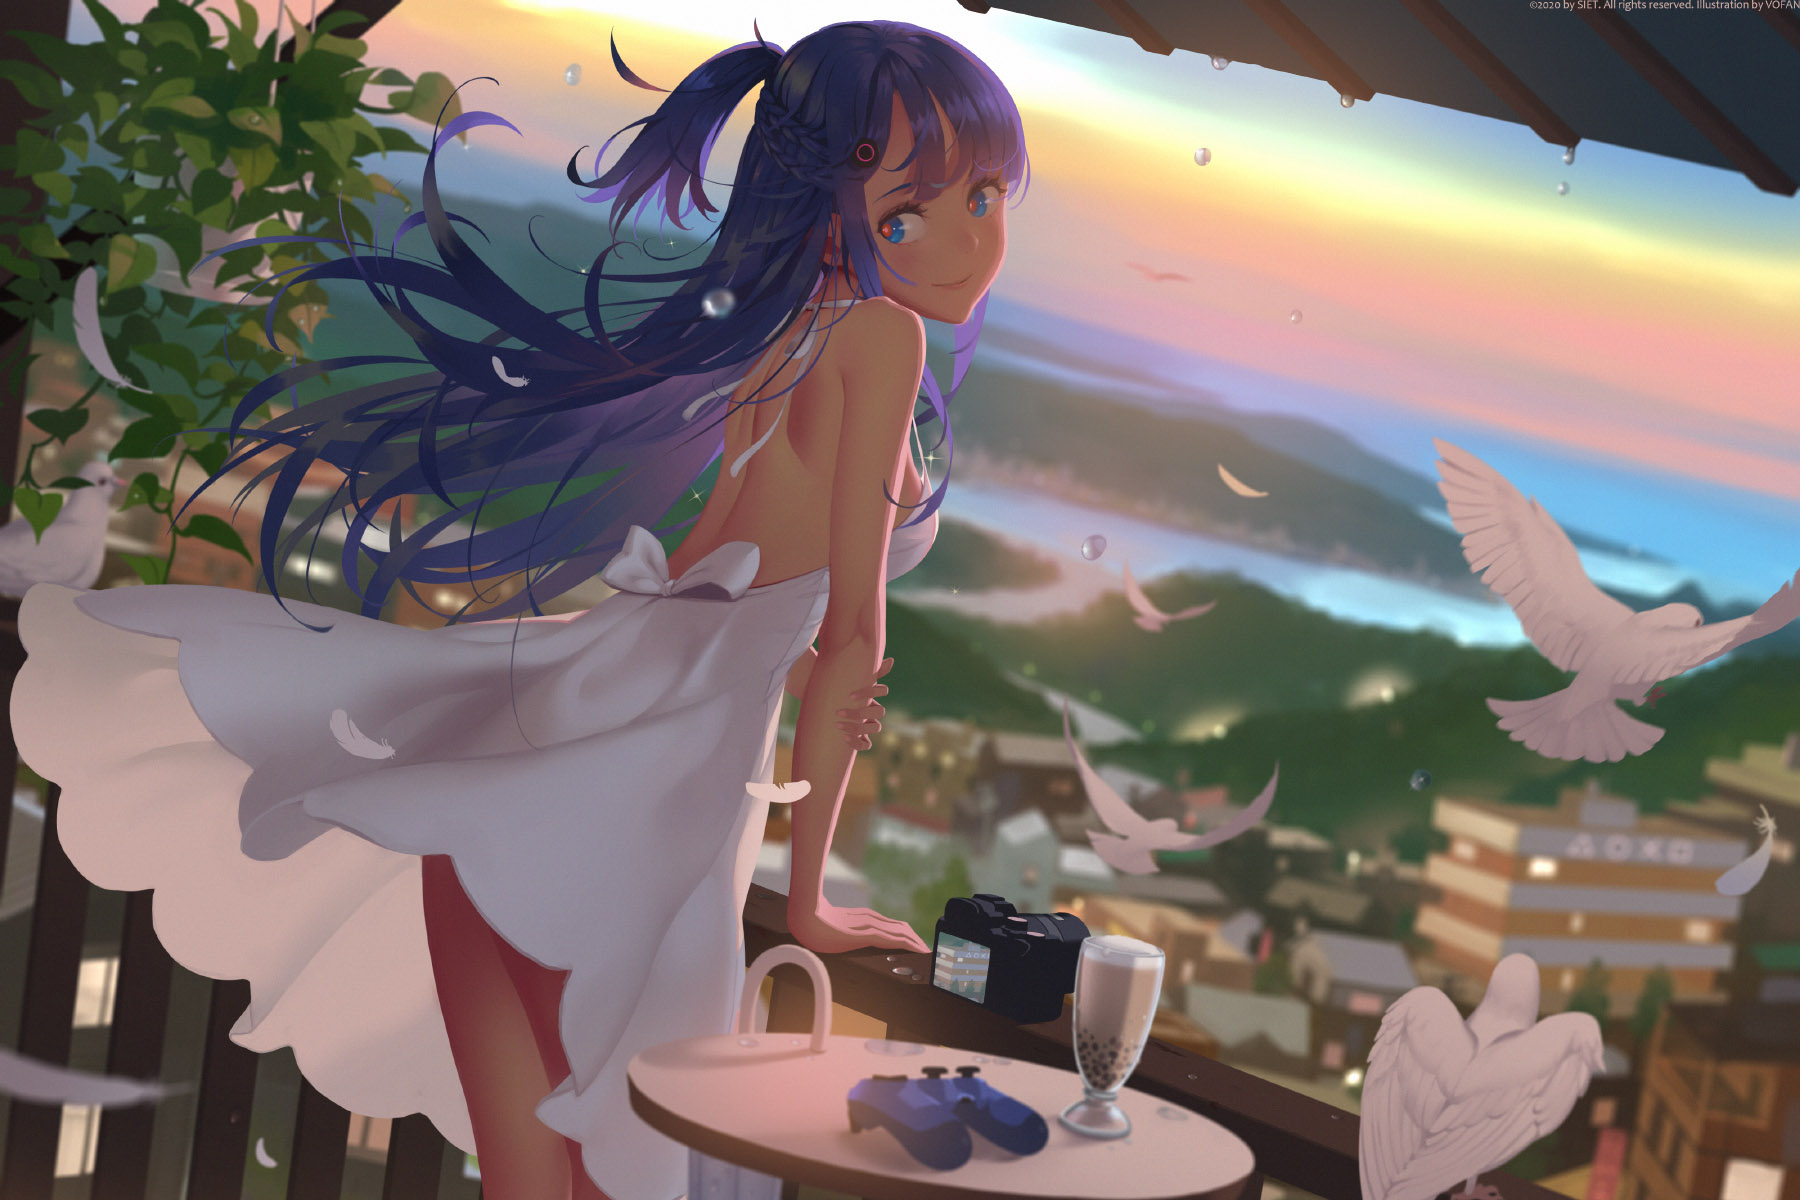 Vofan Anime Anime Girls Blue Hair Blue Eyes Smiling Dress Sun Dress Landscape 1800x1200